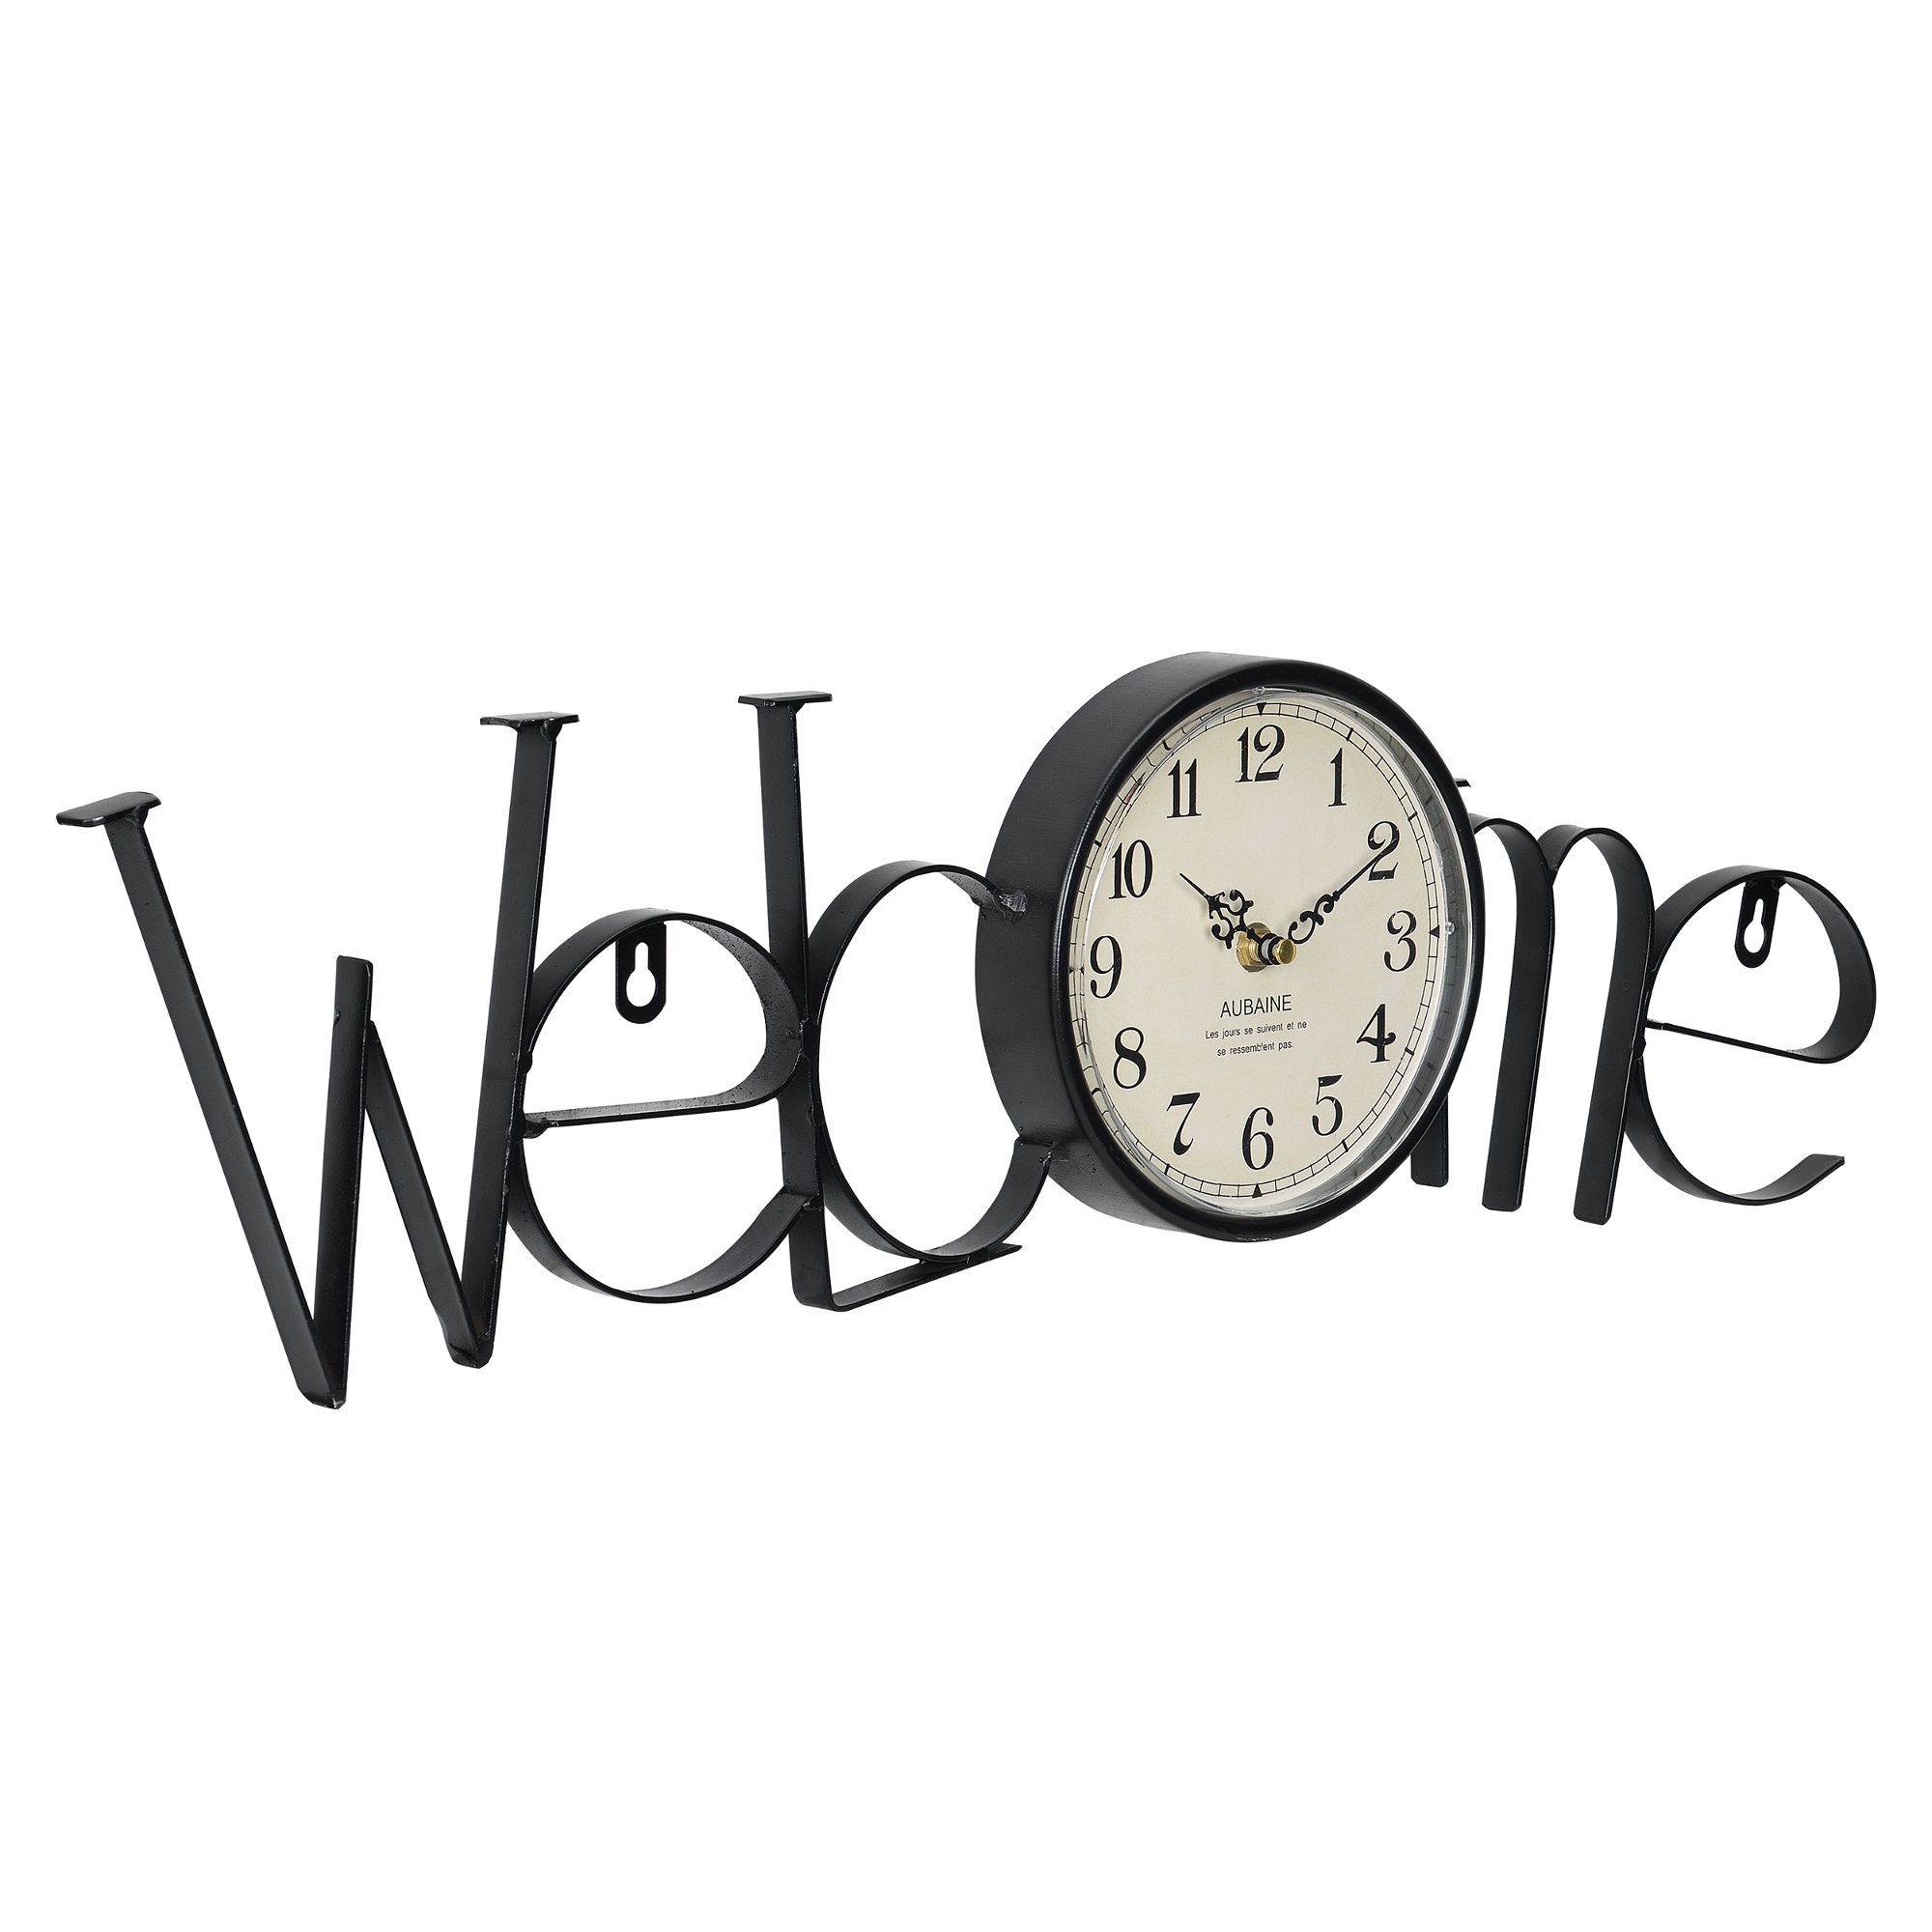 [en.casa]® Nástěnné hodiny nápis Welcome - analogové - 60,5 x 3,5 x 16,5 cm - barevné - H.T. Trade Service GmbH & Co. KG